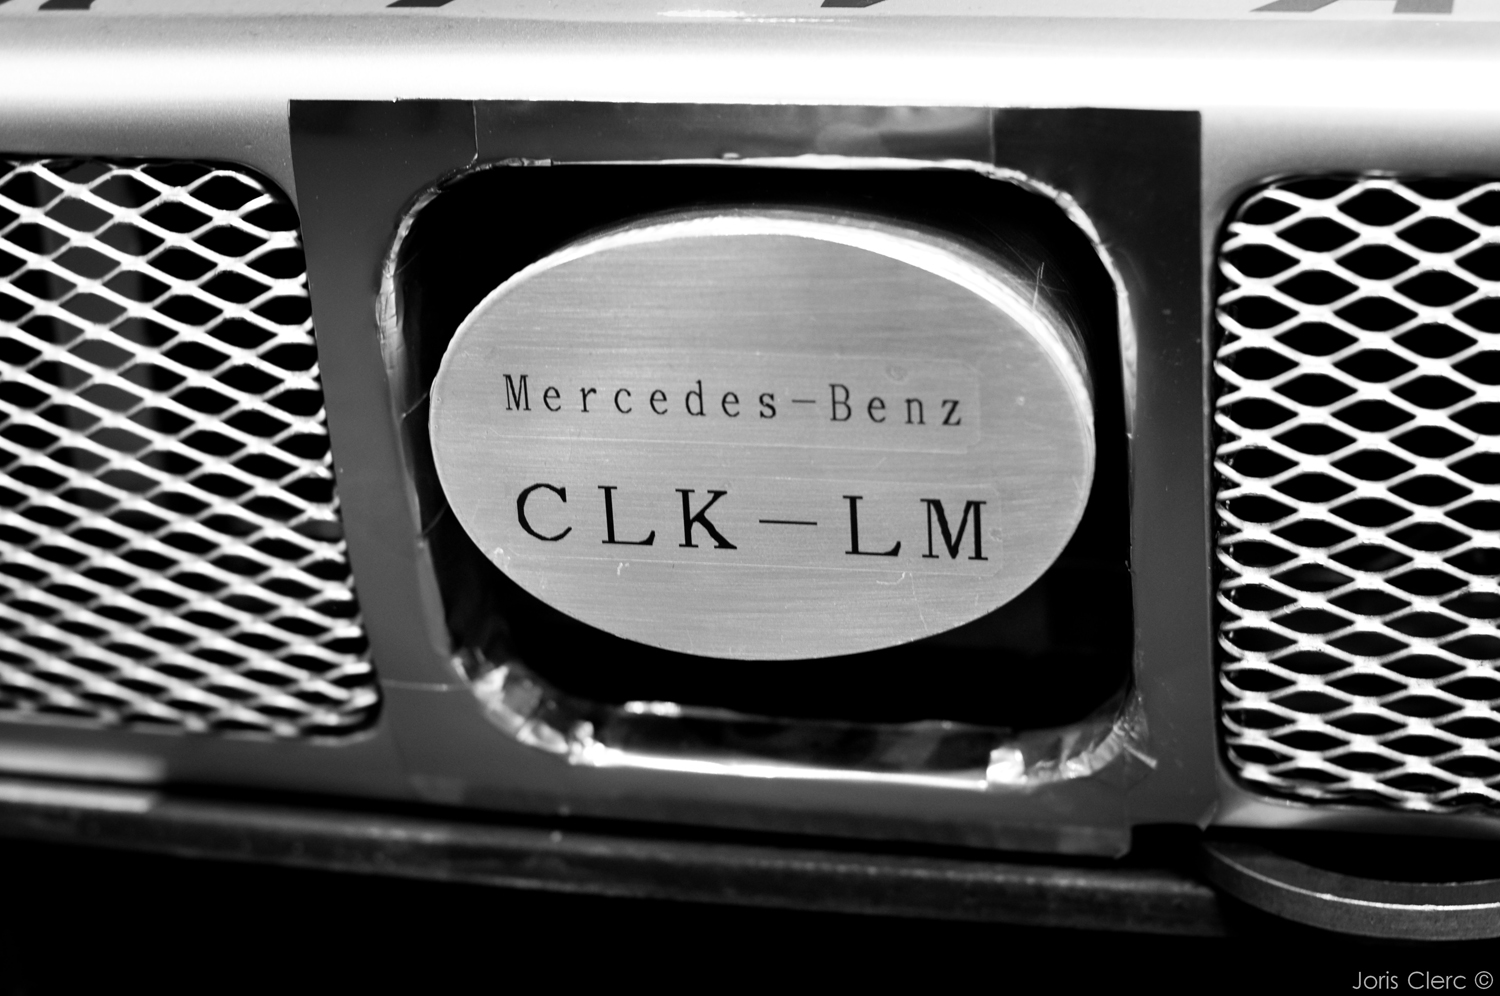 Mercedes CLK GTR-LM